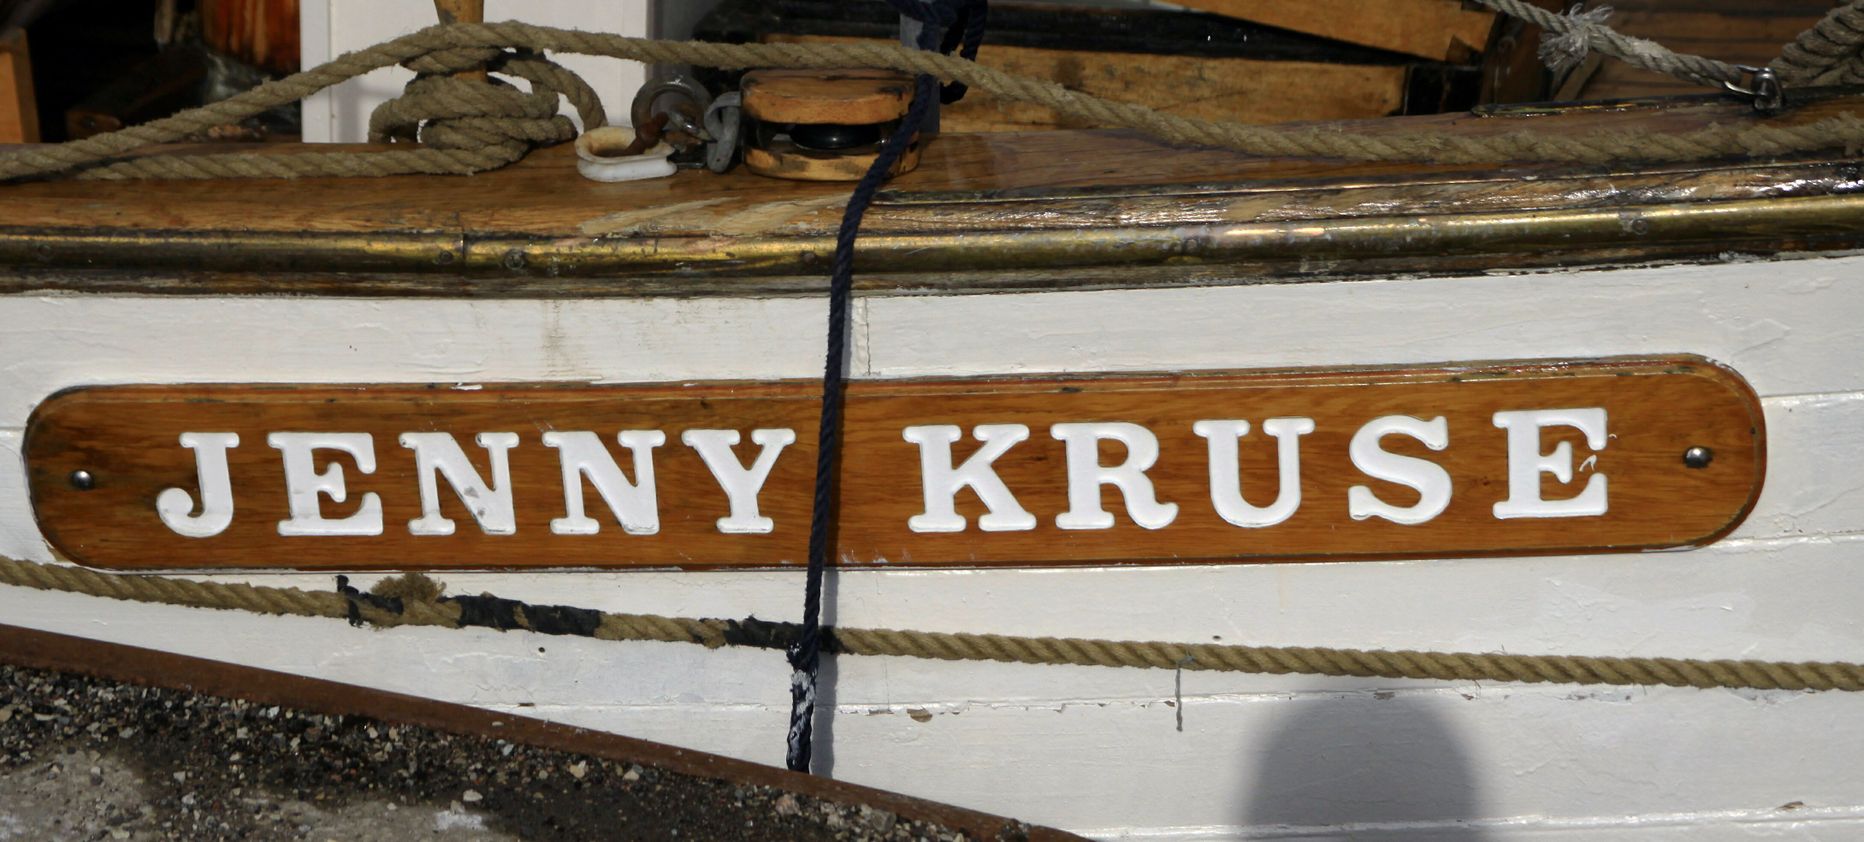 Esimesel advendil avas Pärnus linnarahvale oma parda ja salongi misjonilaev Jenny Kruse.